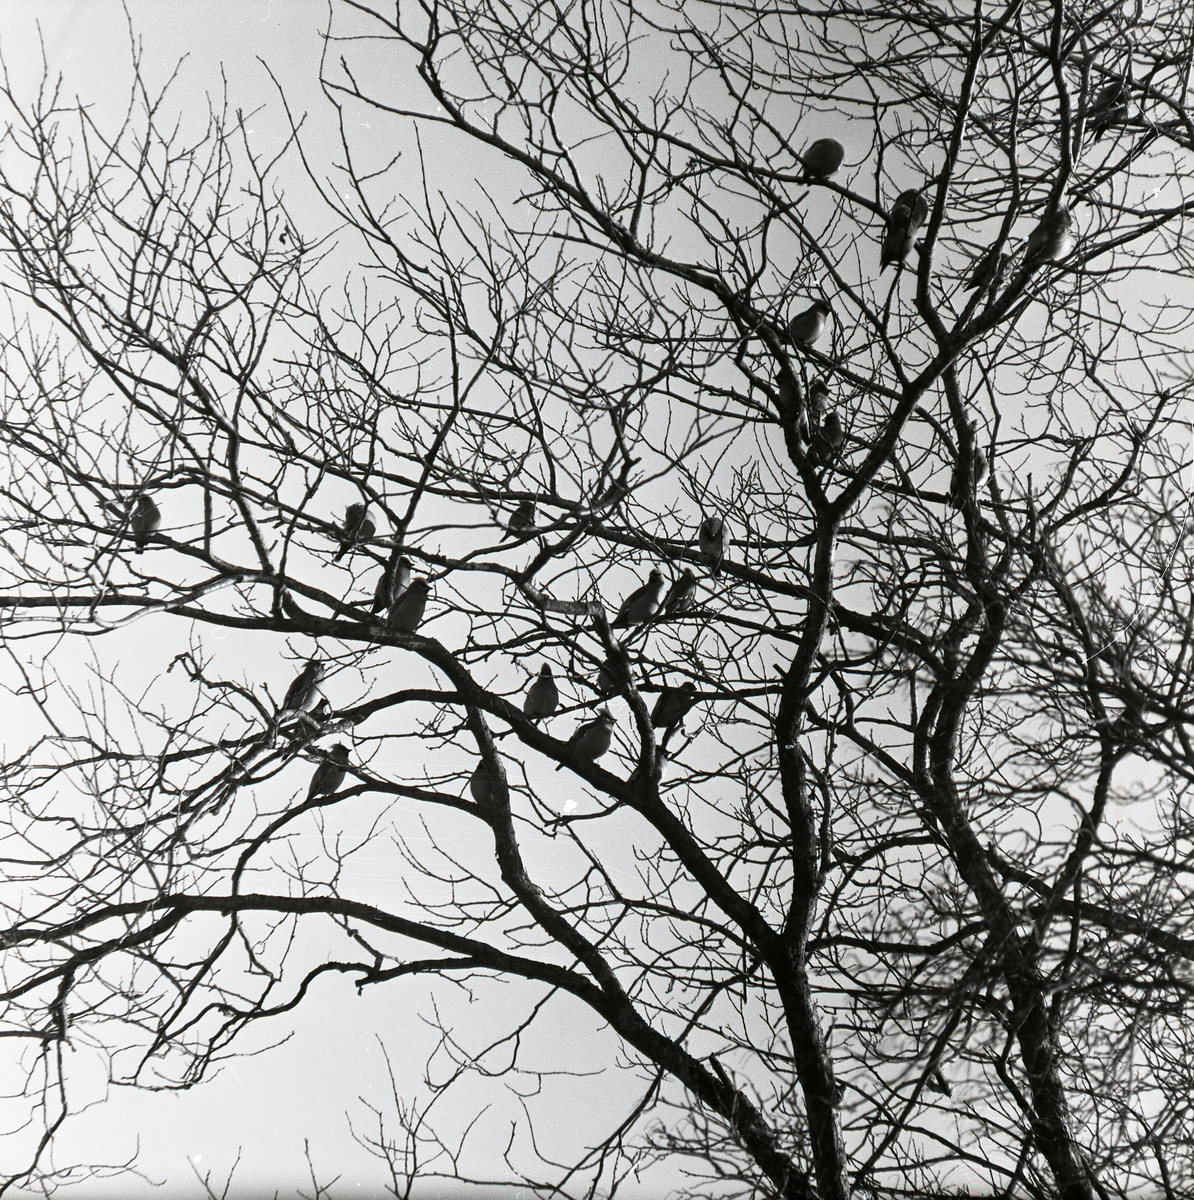 En flock sidensvansar i ett träd den 23 januari 1957.